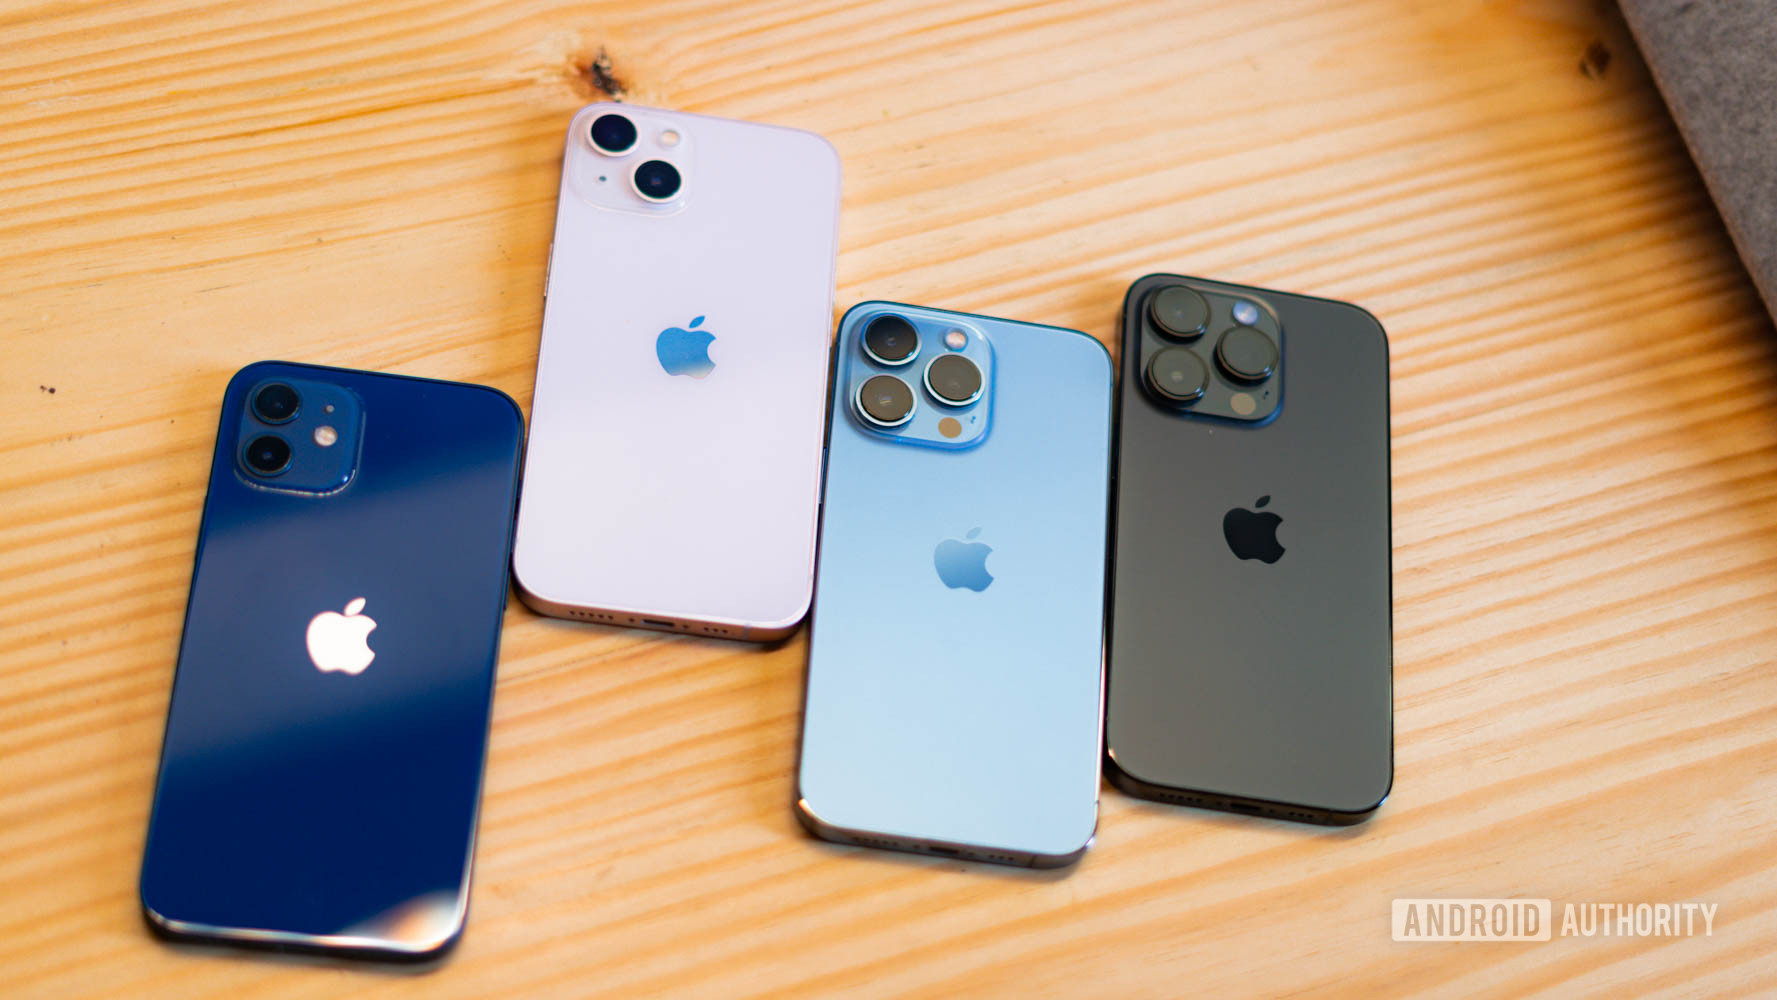 Empat iPhone berbaring telungkup menunjukkan tampilan belakang